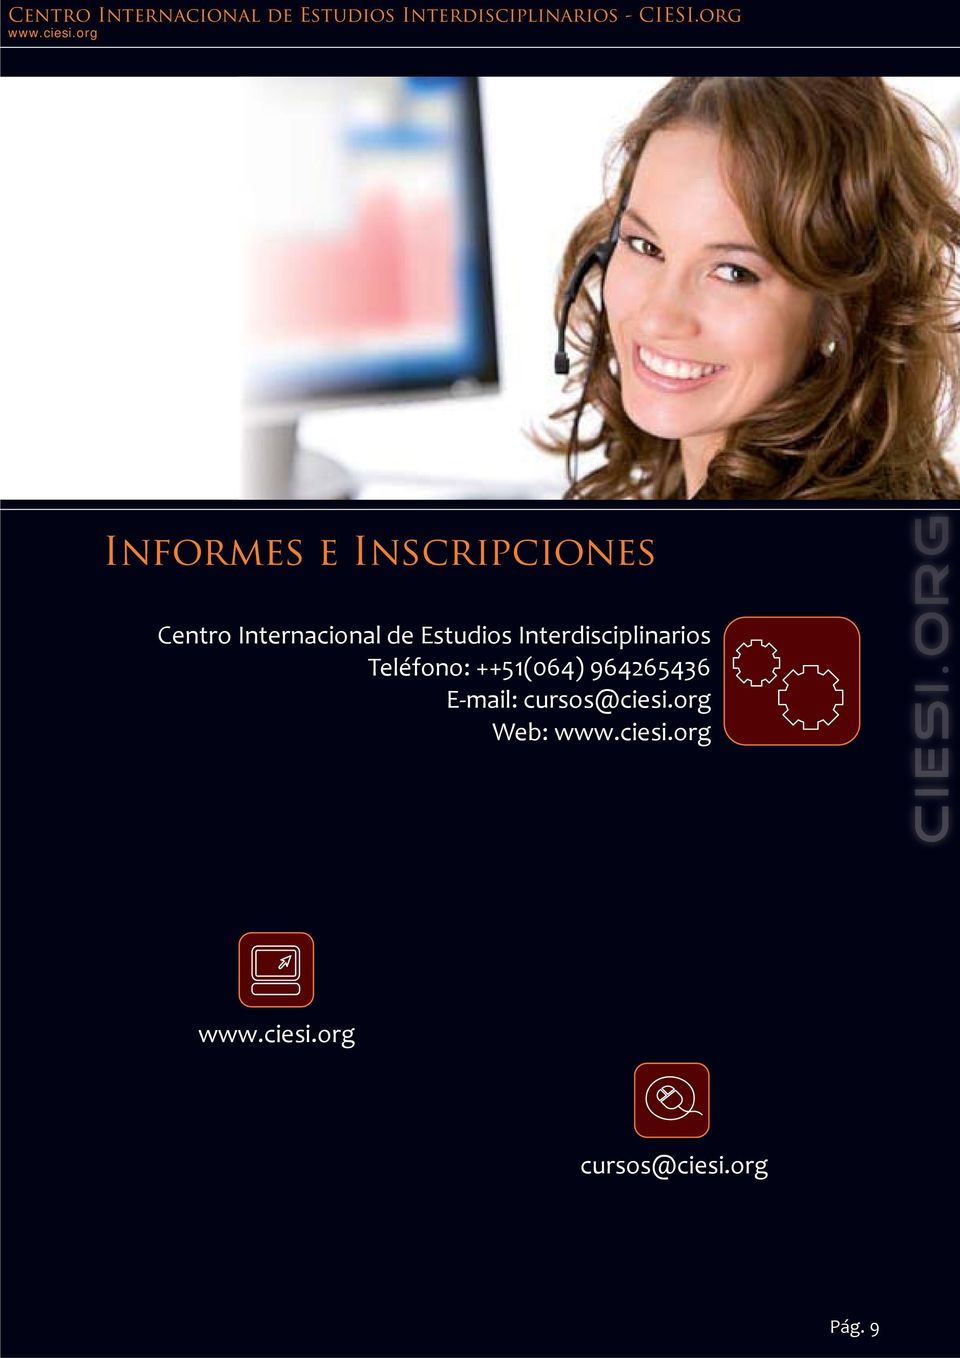 Interdisciplinarios Teléfono: ++51(064)